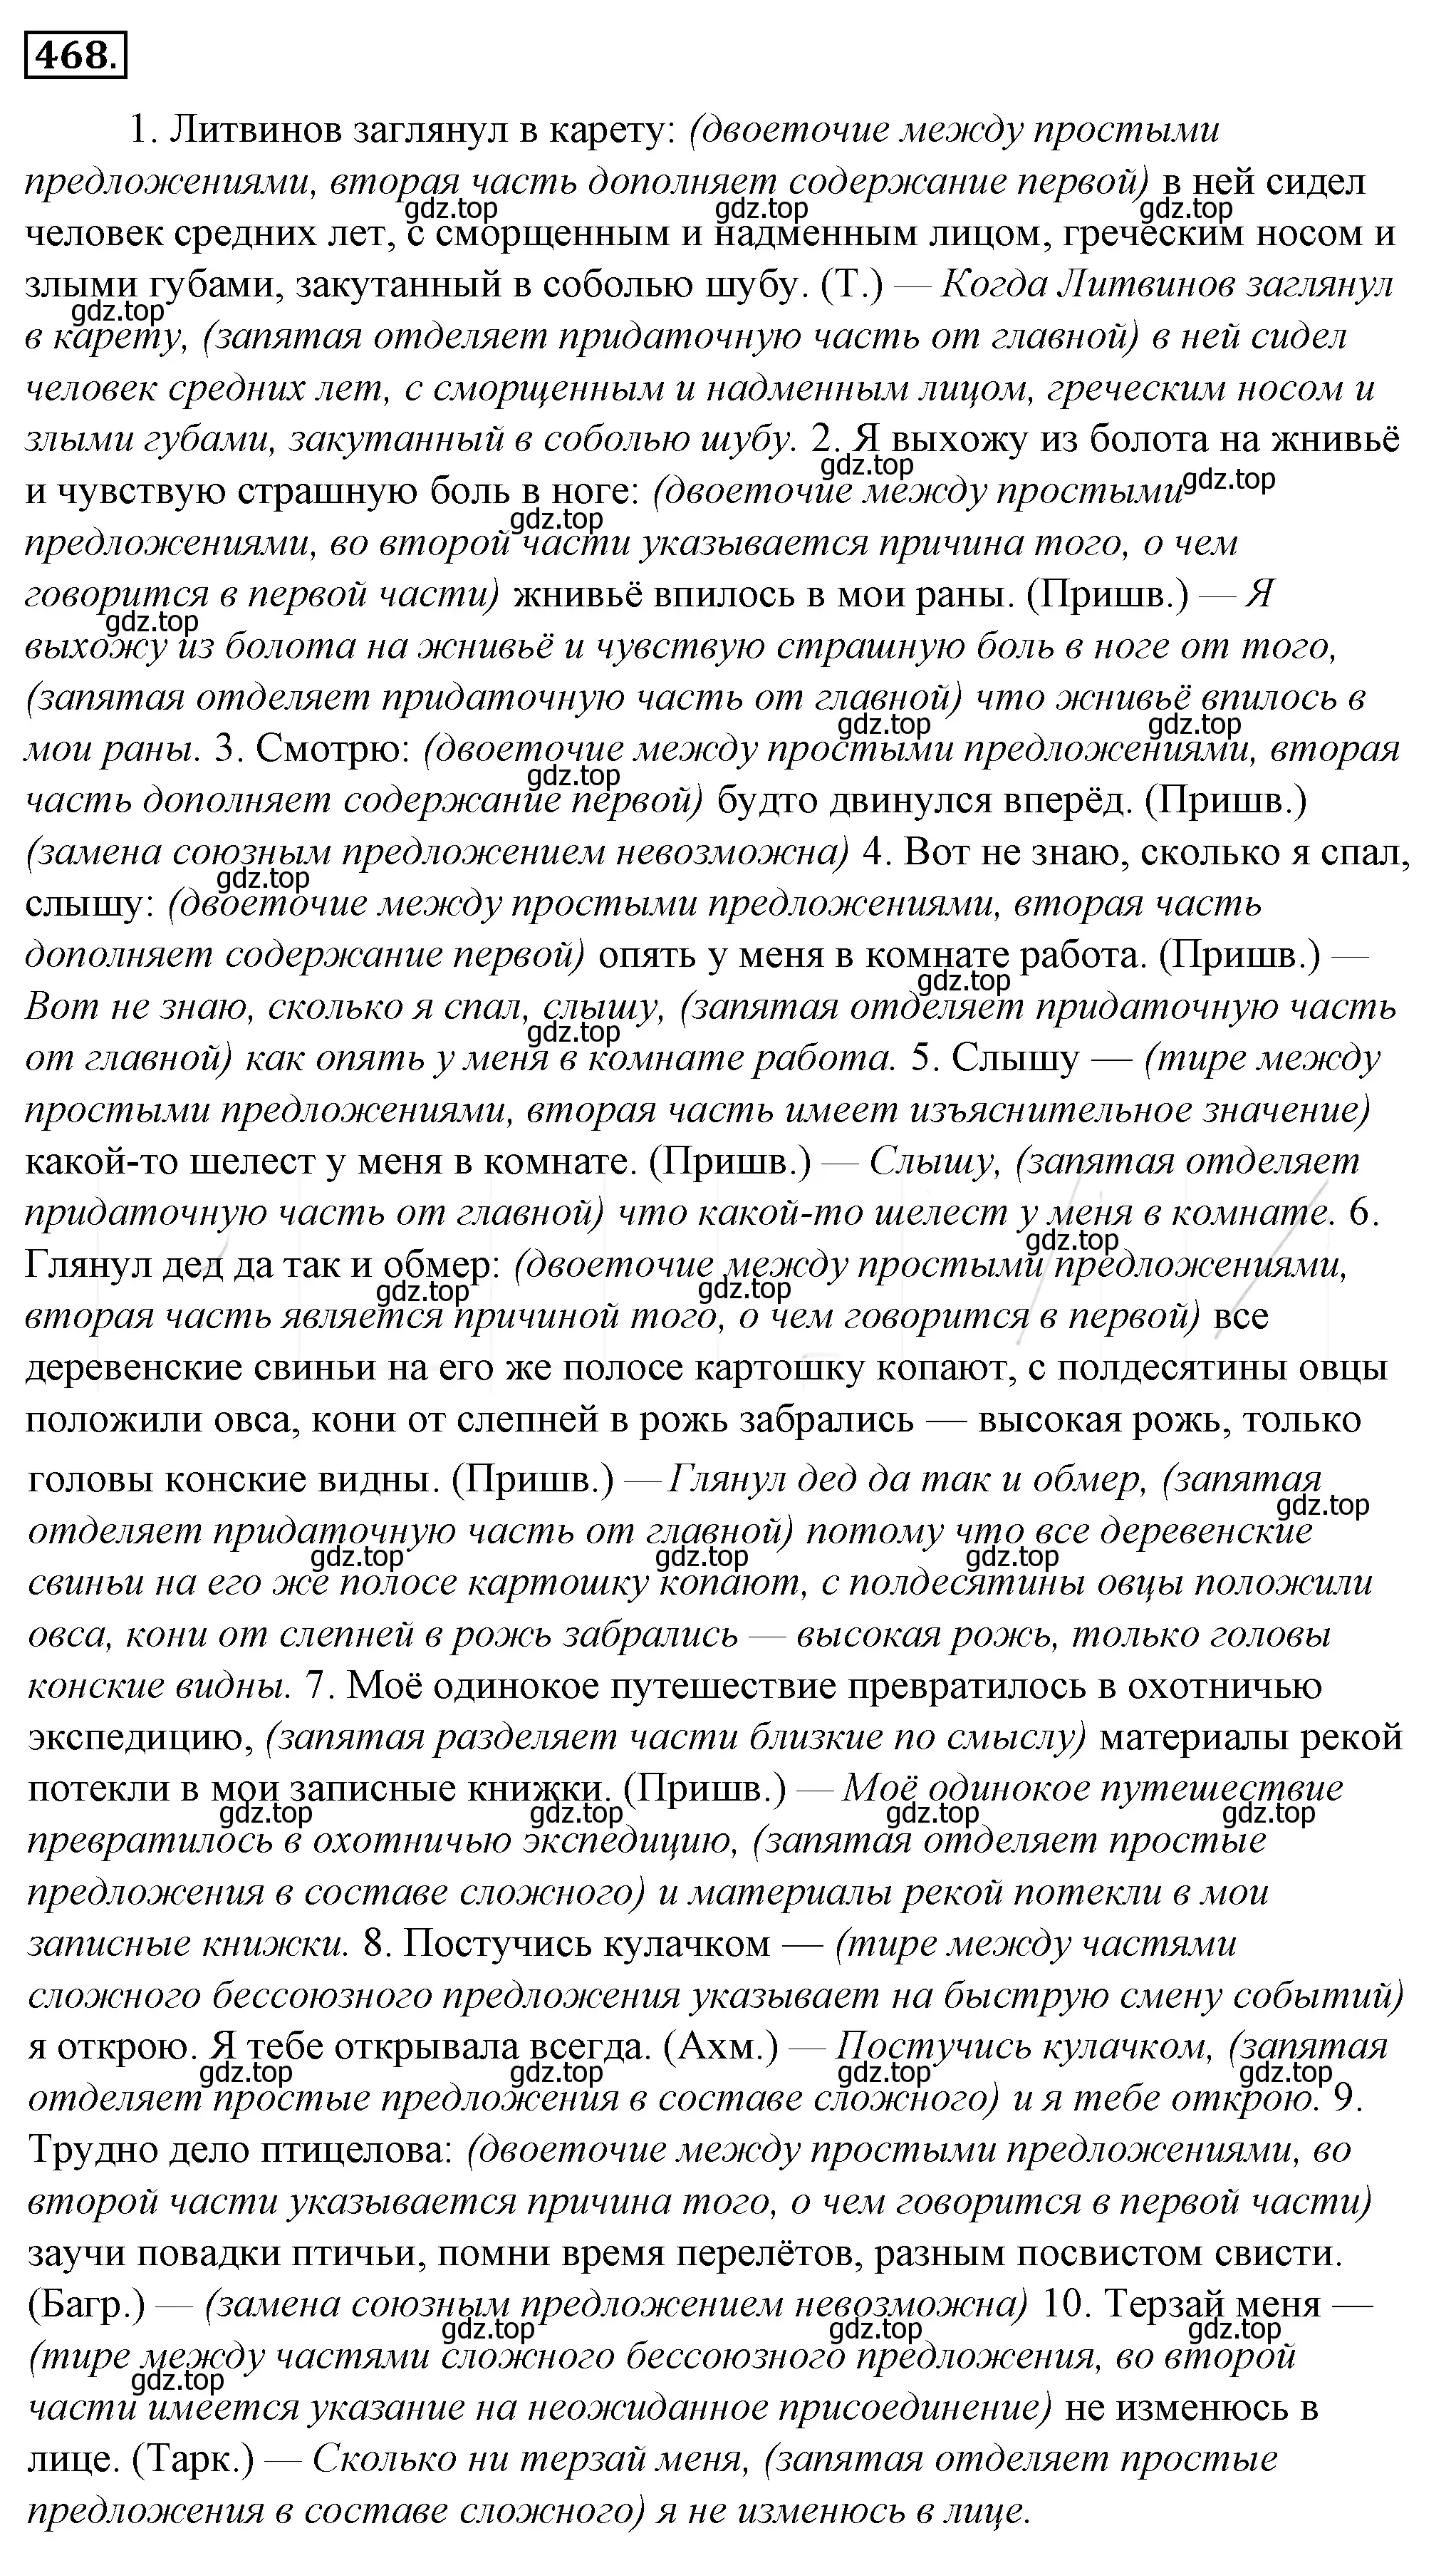 Решение 4. номер 133 (страница 183) гдз по русскому языку 10-11 класс Гольцова, Шамшин, учебник 2 часть